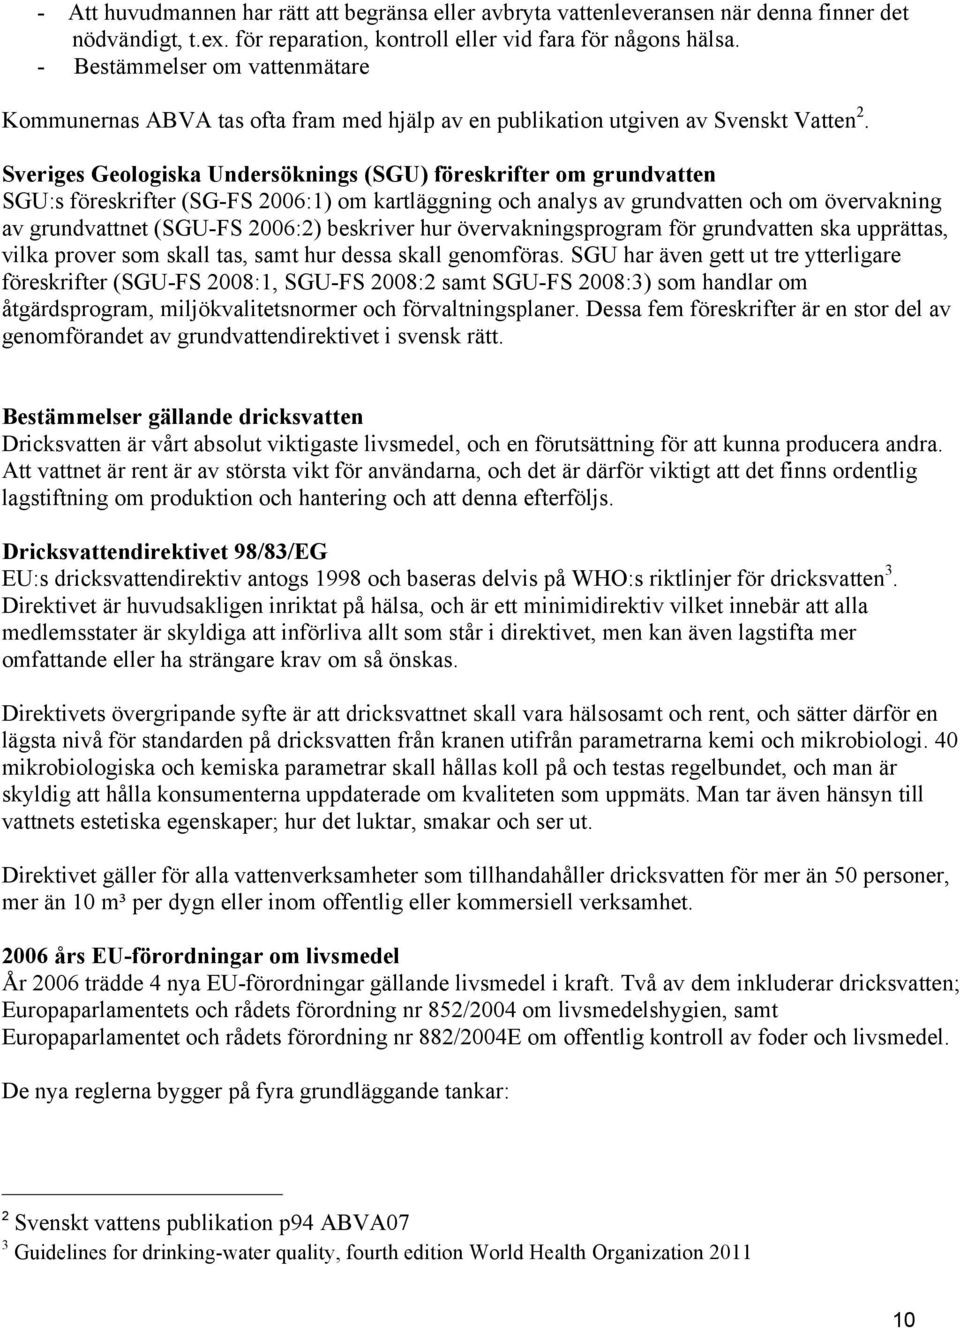 Sveriges Geologiska Undersöknings (SGU) föreskrifter om grundvatten SGU:s föreskrifter (SG-FS 2006:1) om kartläggning och analys av grundvatten och om övervakning av grundvattnet (SGU-FS 2006:2)